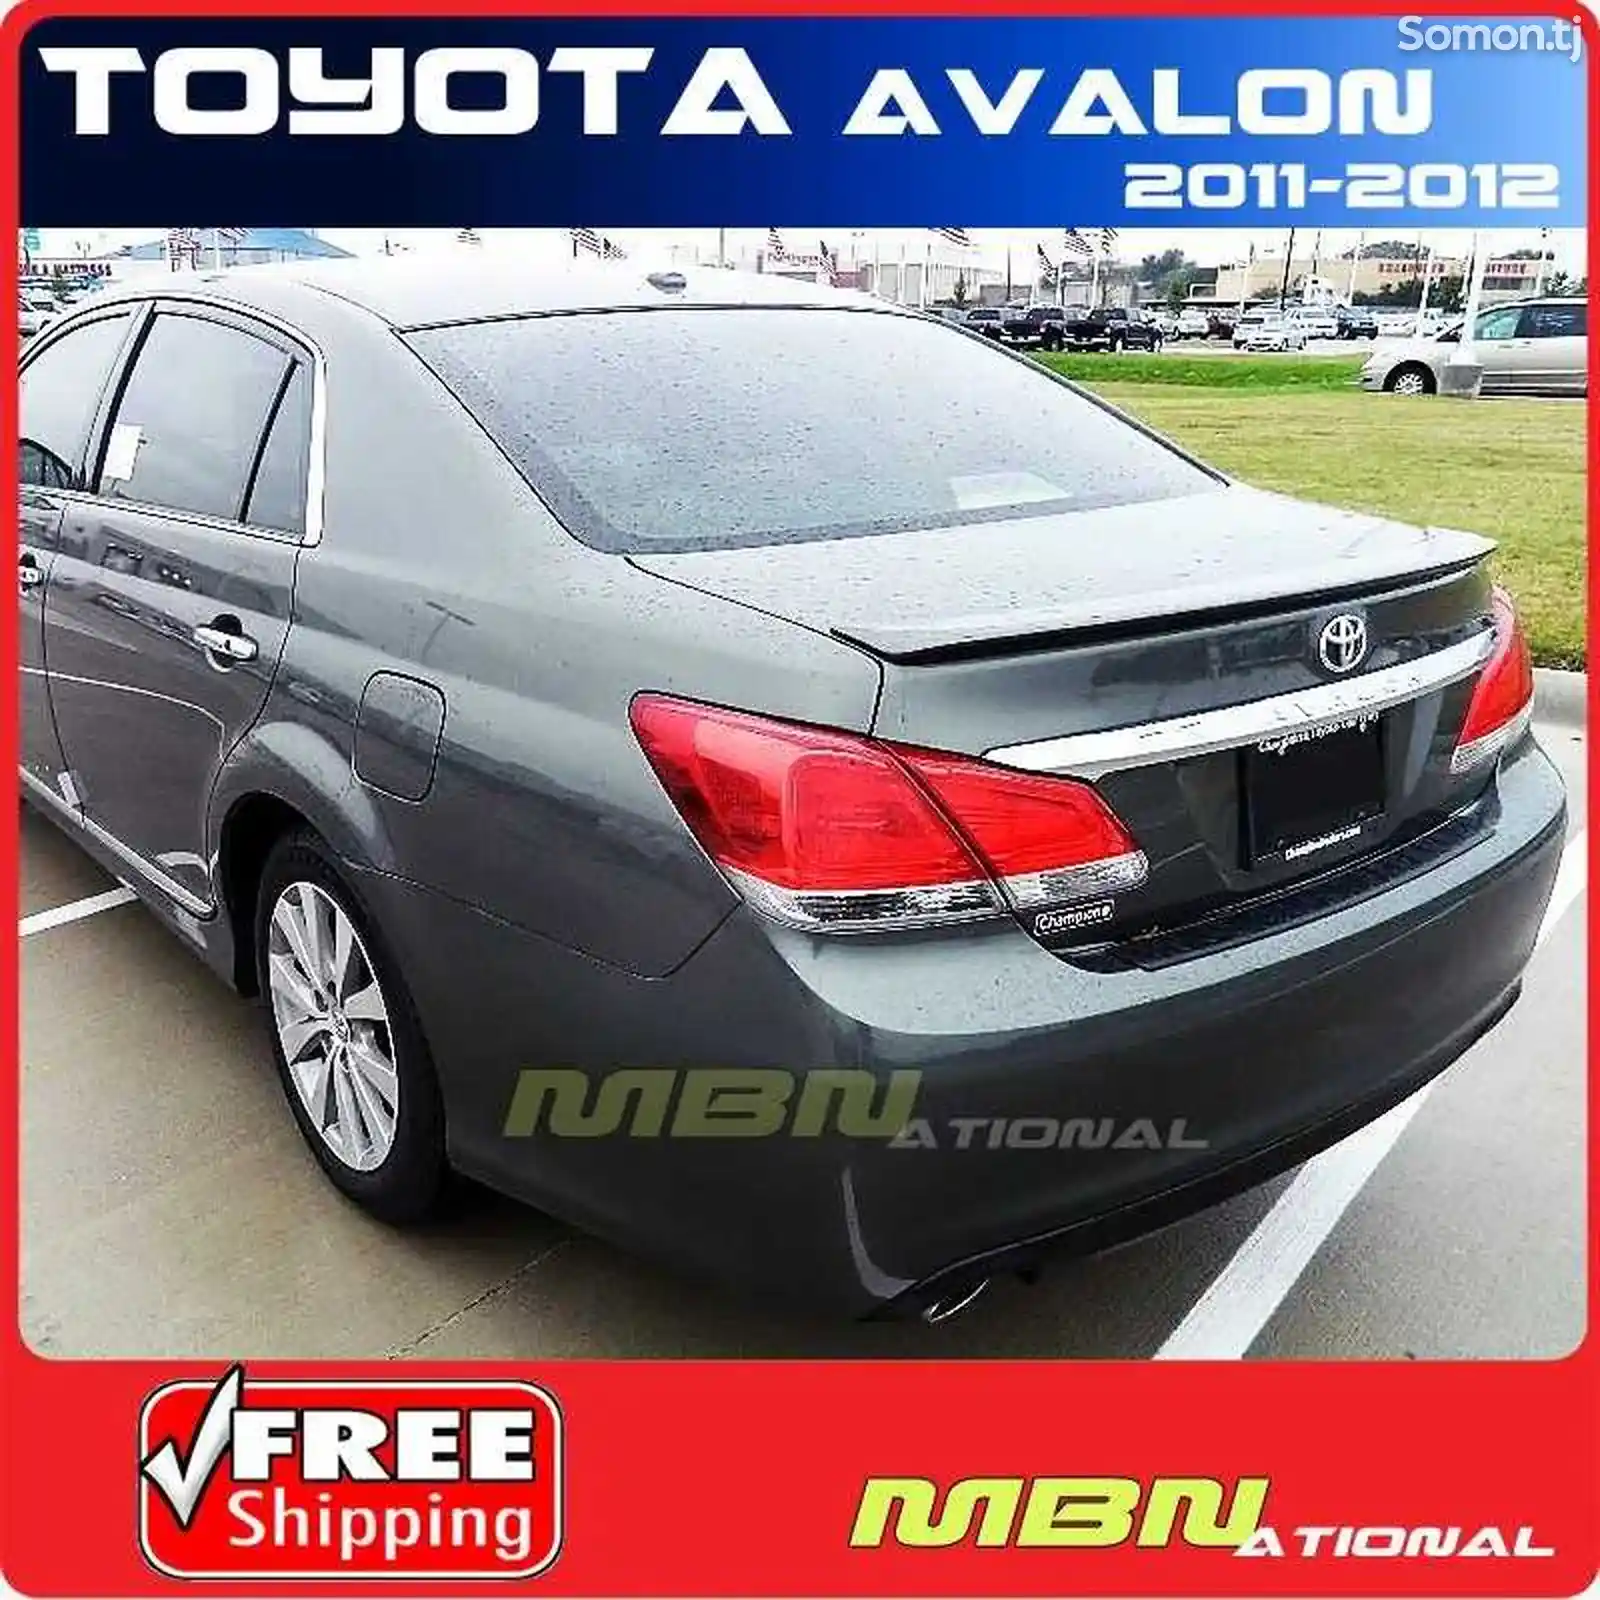 спойлер Toyota Avalon 2011-2012-1